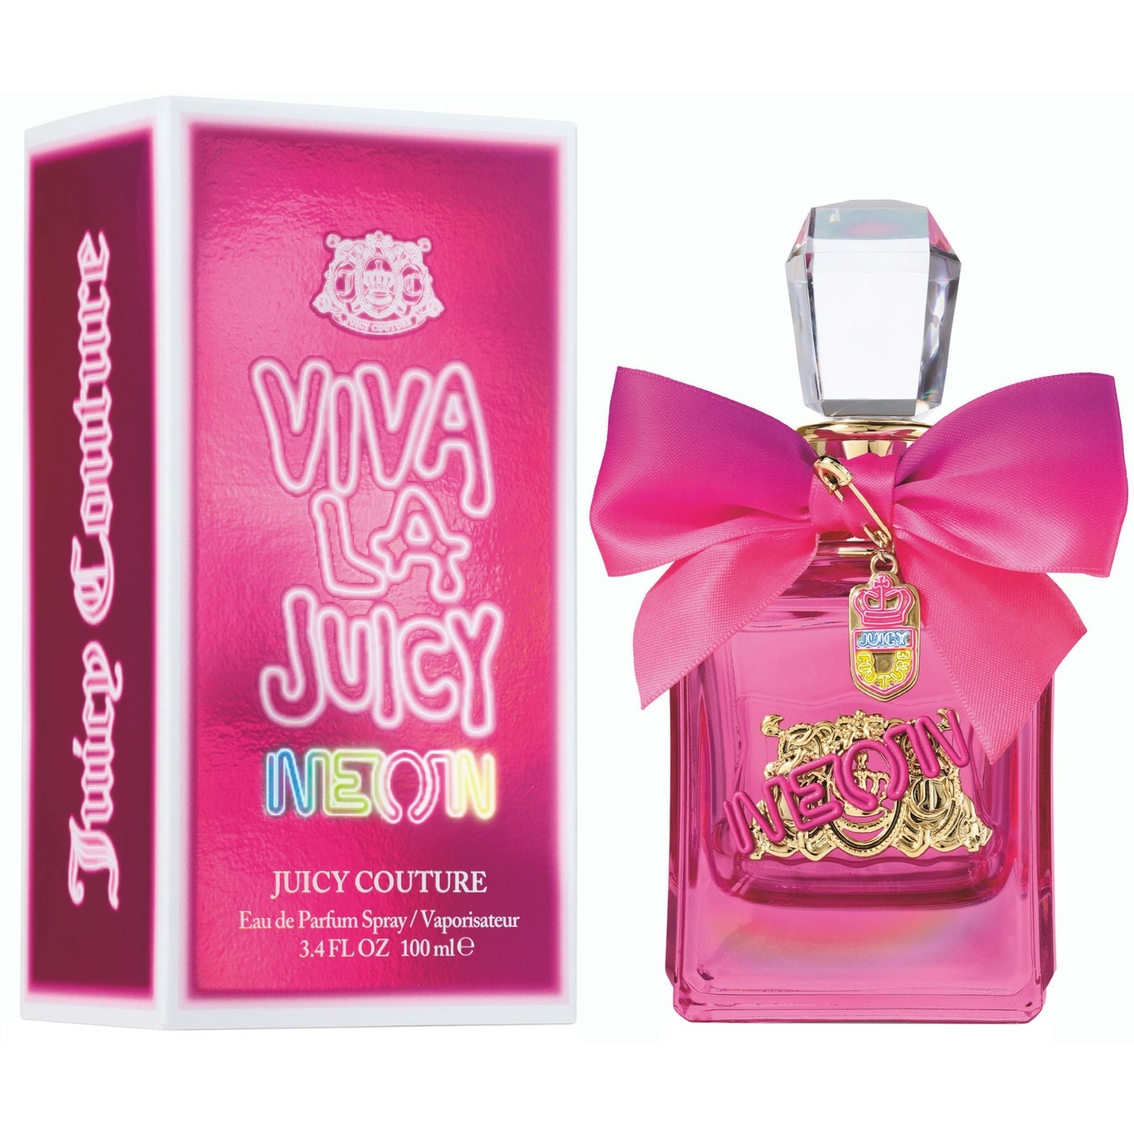 Juicy Couture Viva La Juicy Neon Eau de Parfum - Image 2 of 2